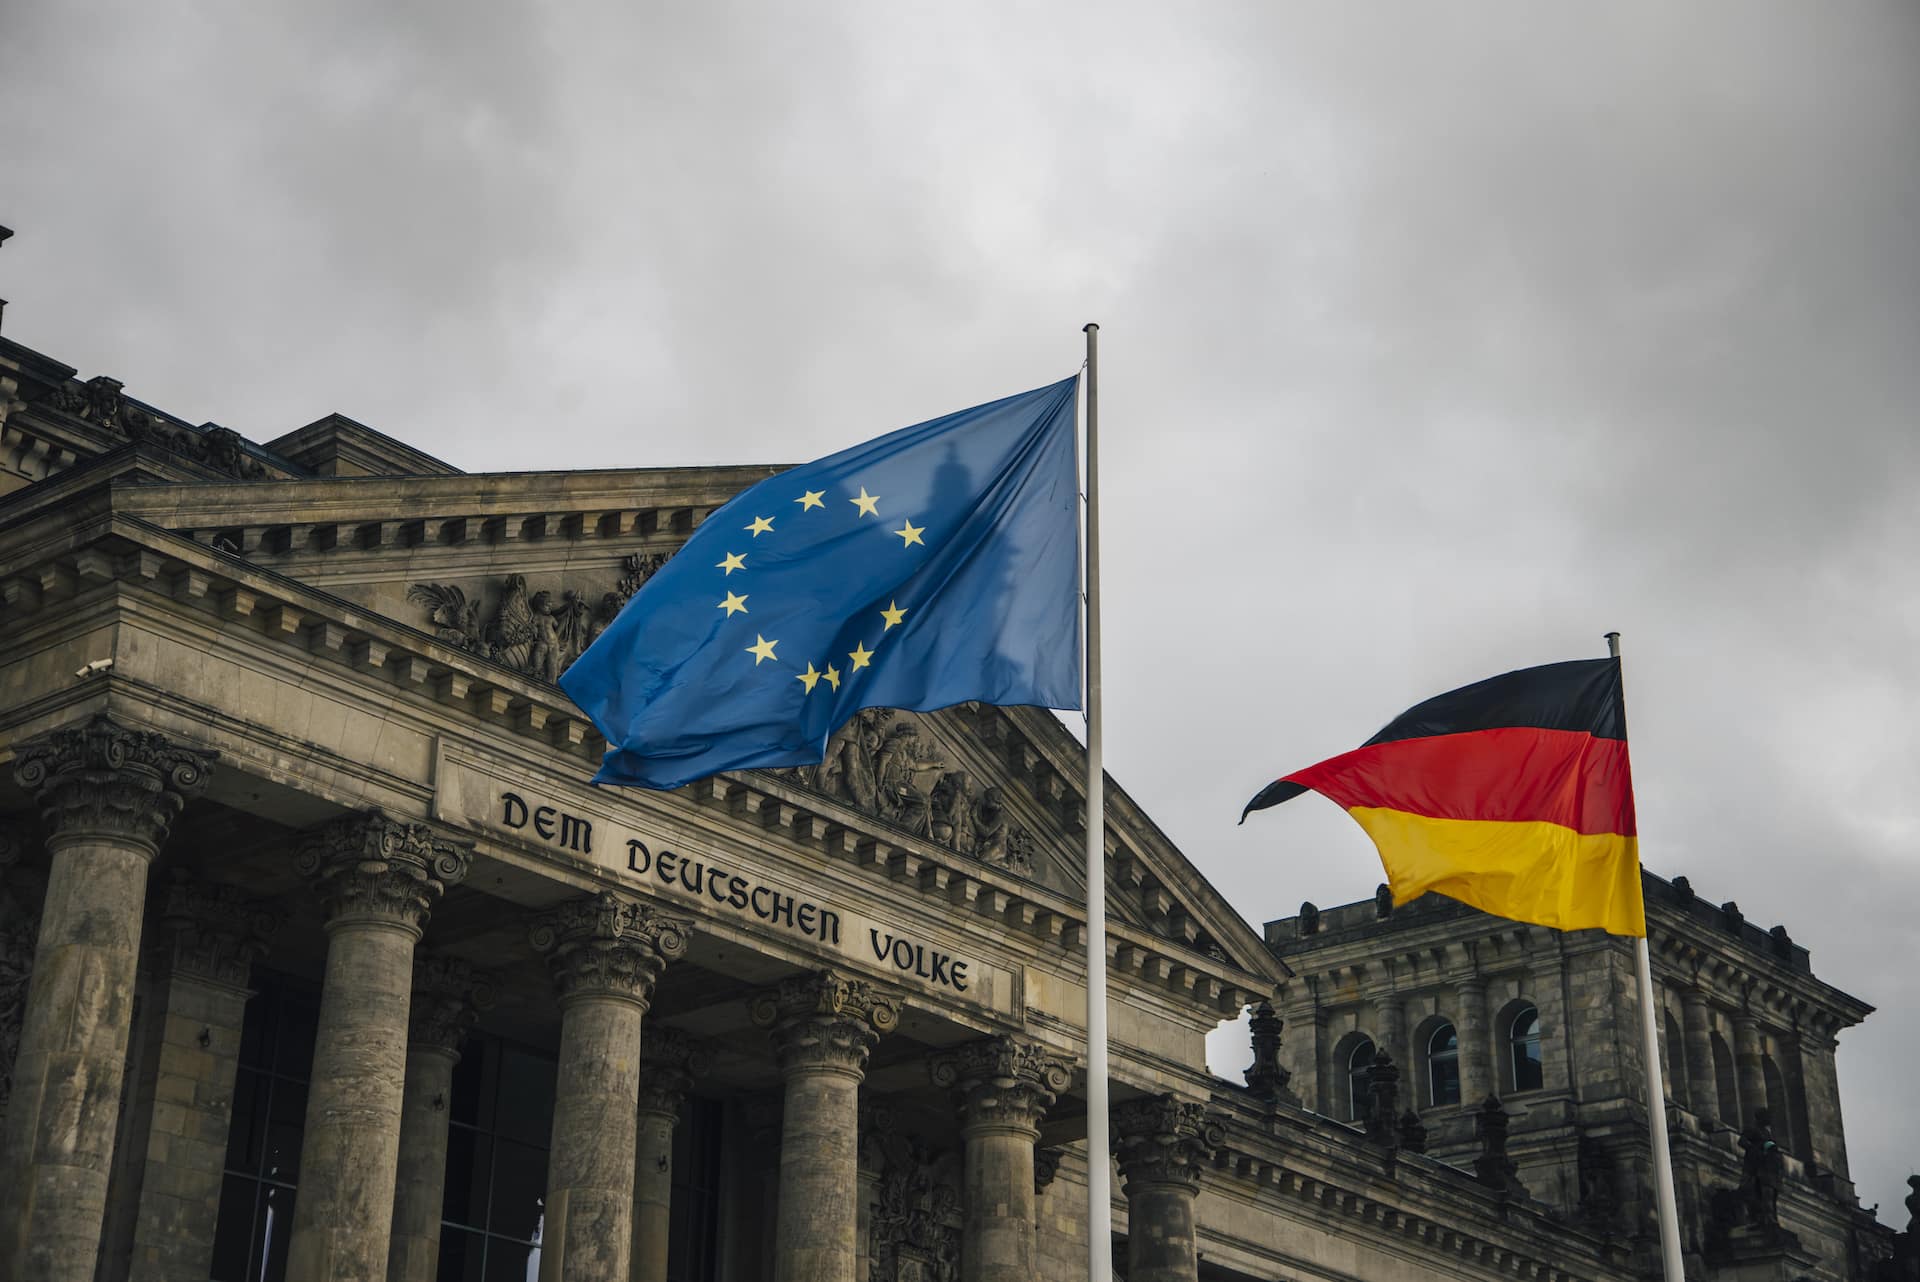 Abbildung des Reichstagsgebäudes in Berlin, Deutschland, mit der Deutschland-Flagge und einer Flagge der Europäischen Union.